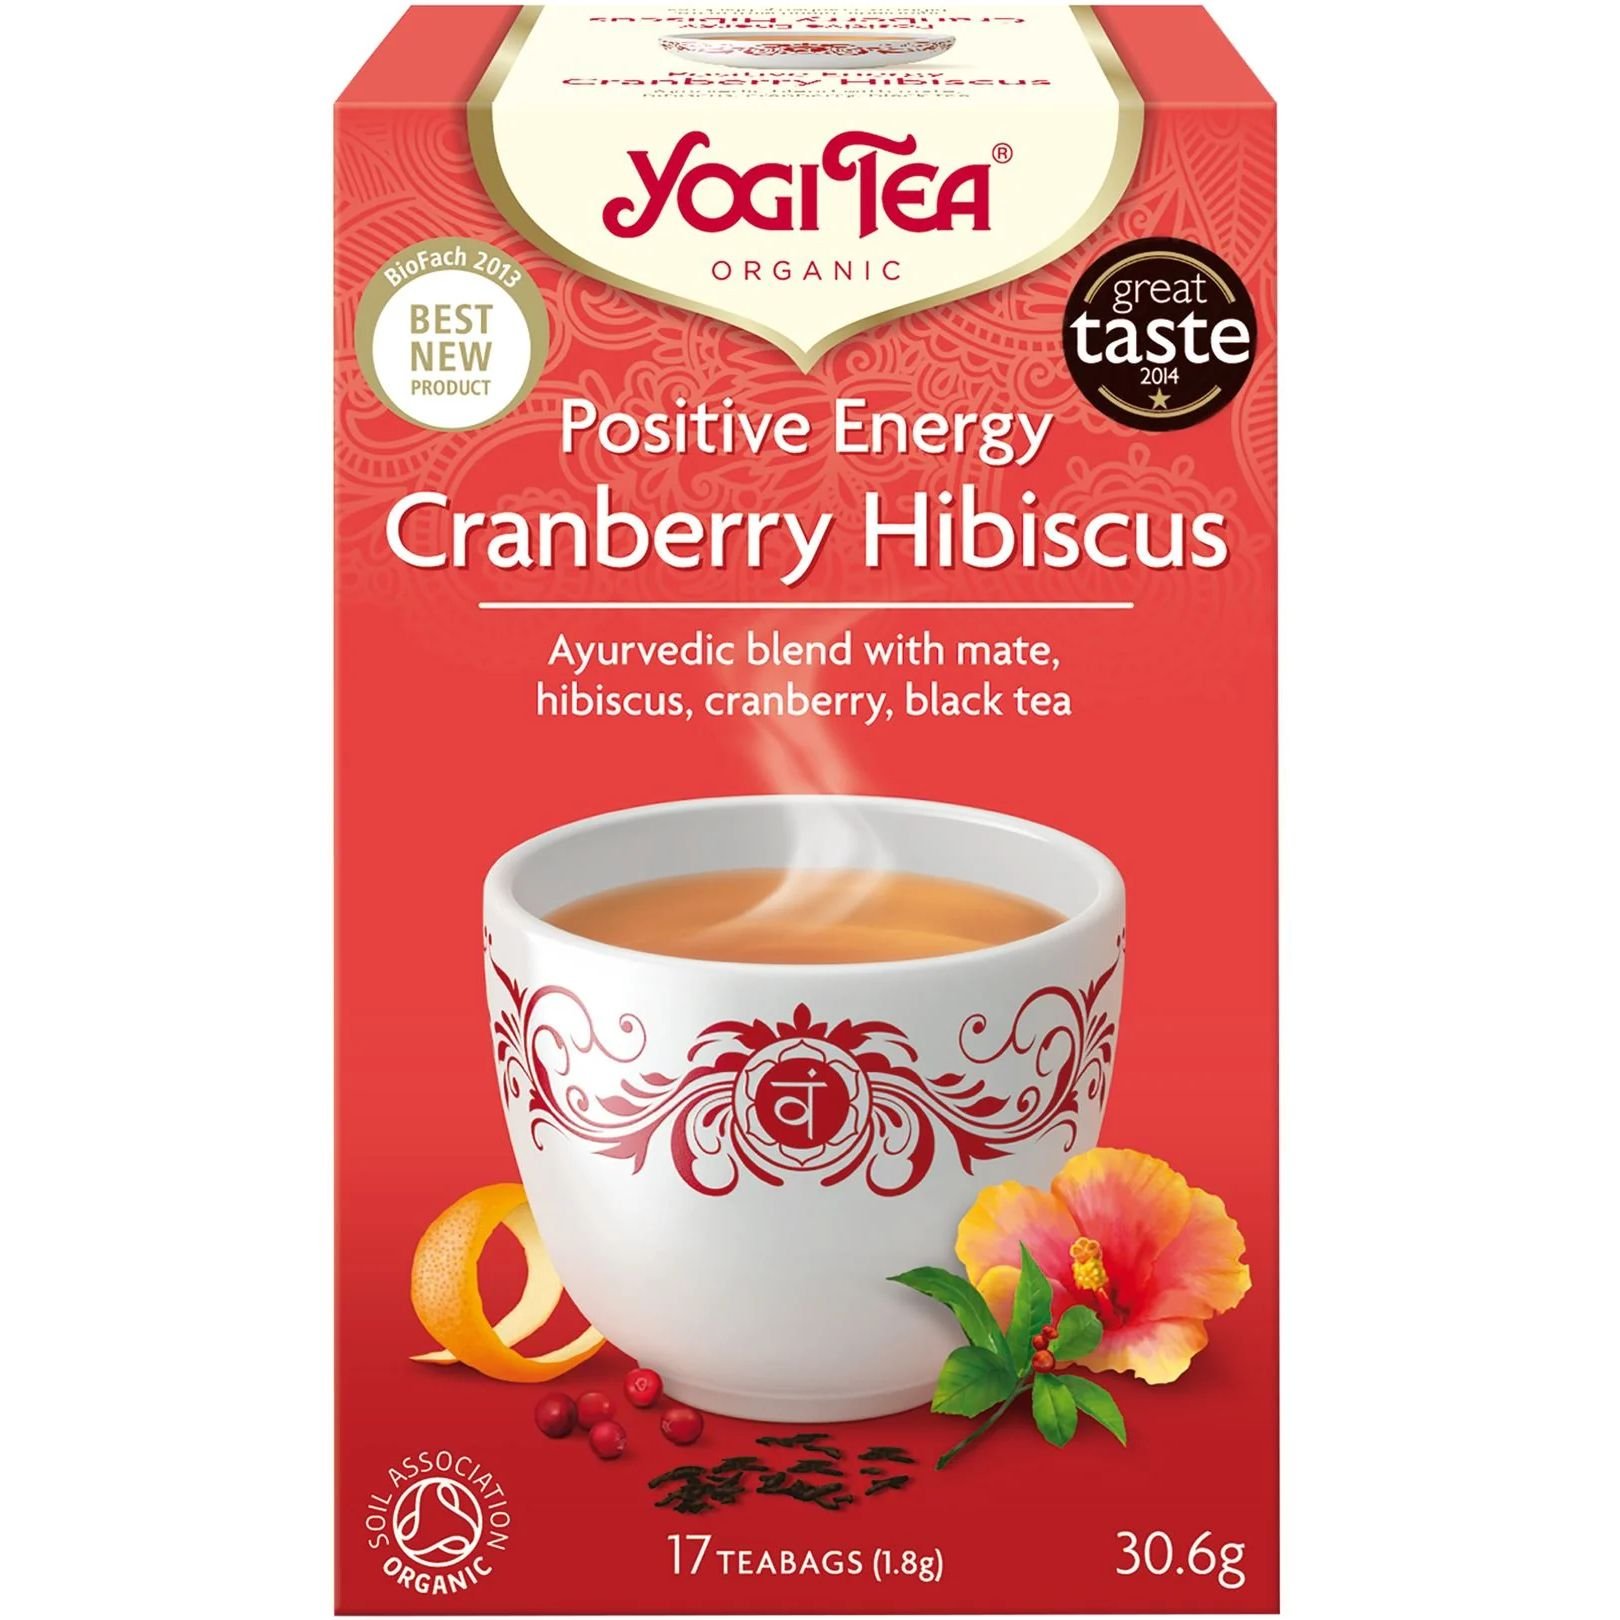 Чай травяной Yogi Tea Cranberry Hibiscus Positive Energy органический 30.6 г (17 шт. х 1.8 г) - фото 1